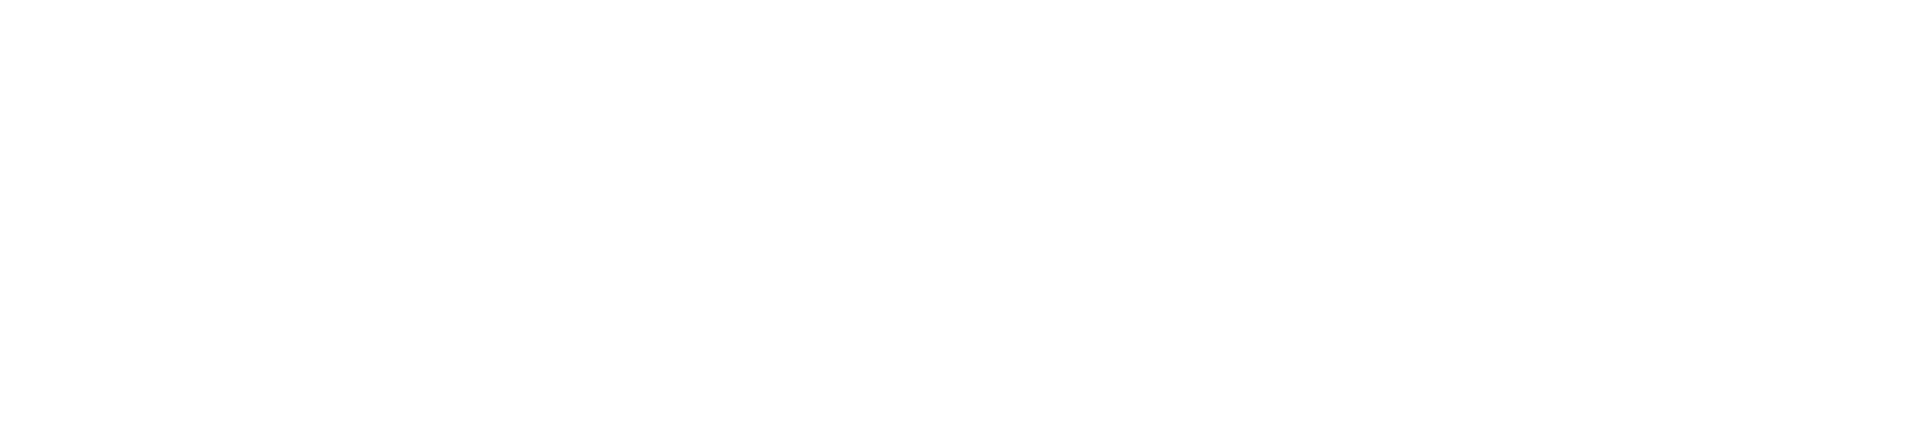 Kustom Construction Group Logo